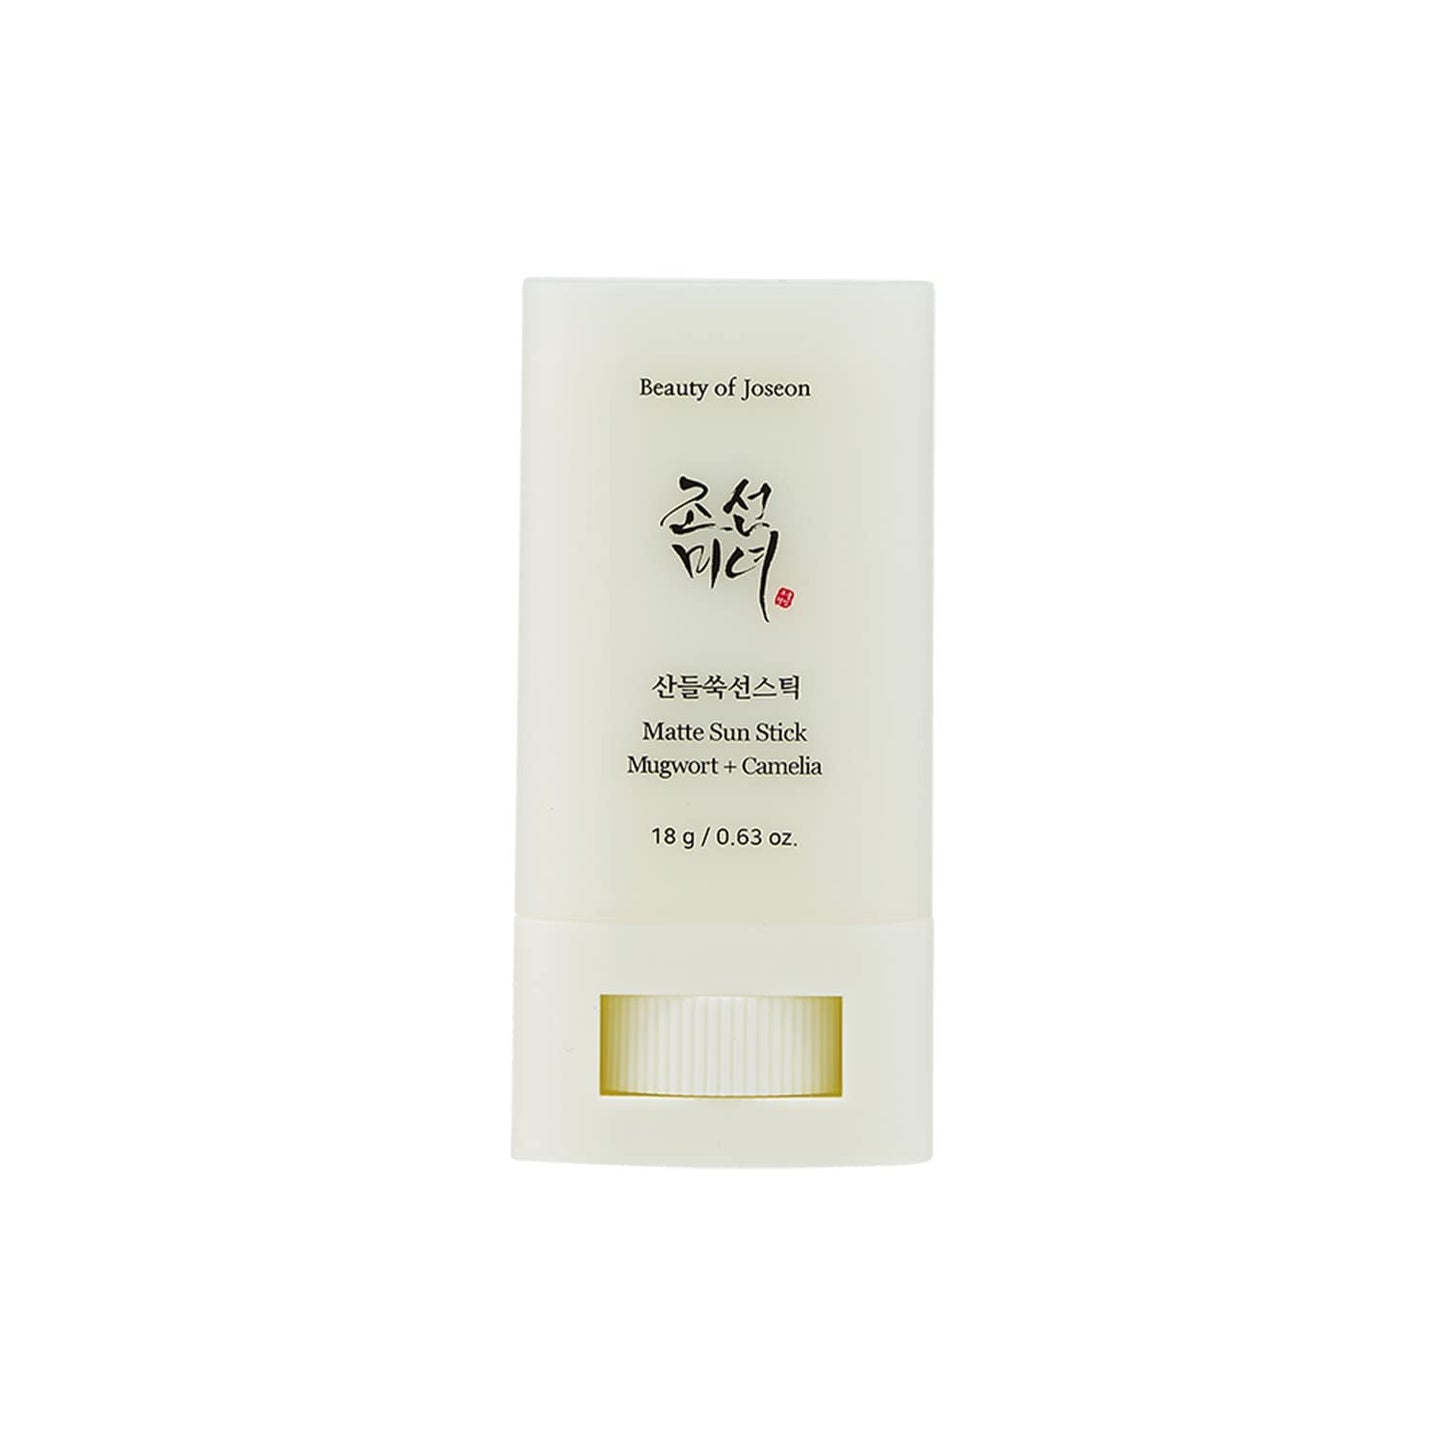 CIETTE BEAUTY - THE BEAUTY GIFT HAMPER Luxury Korean Skincare K-Beauty Gifts